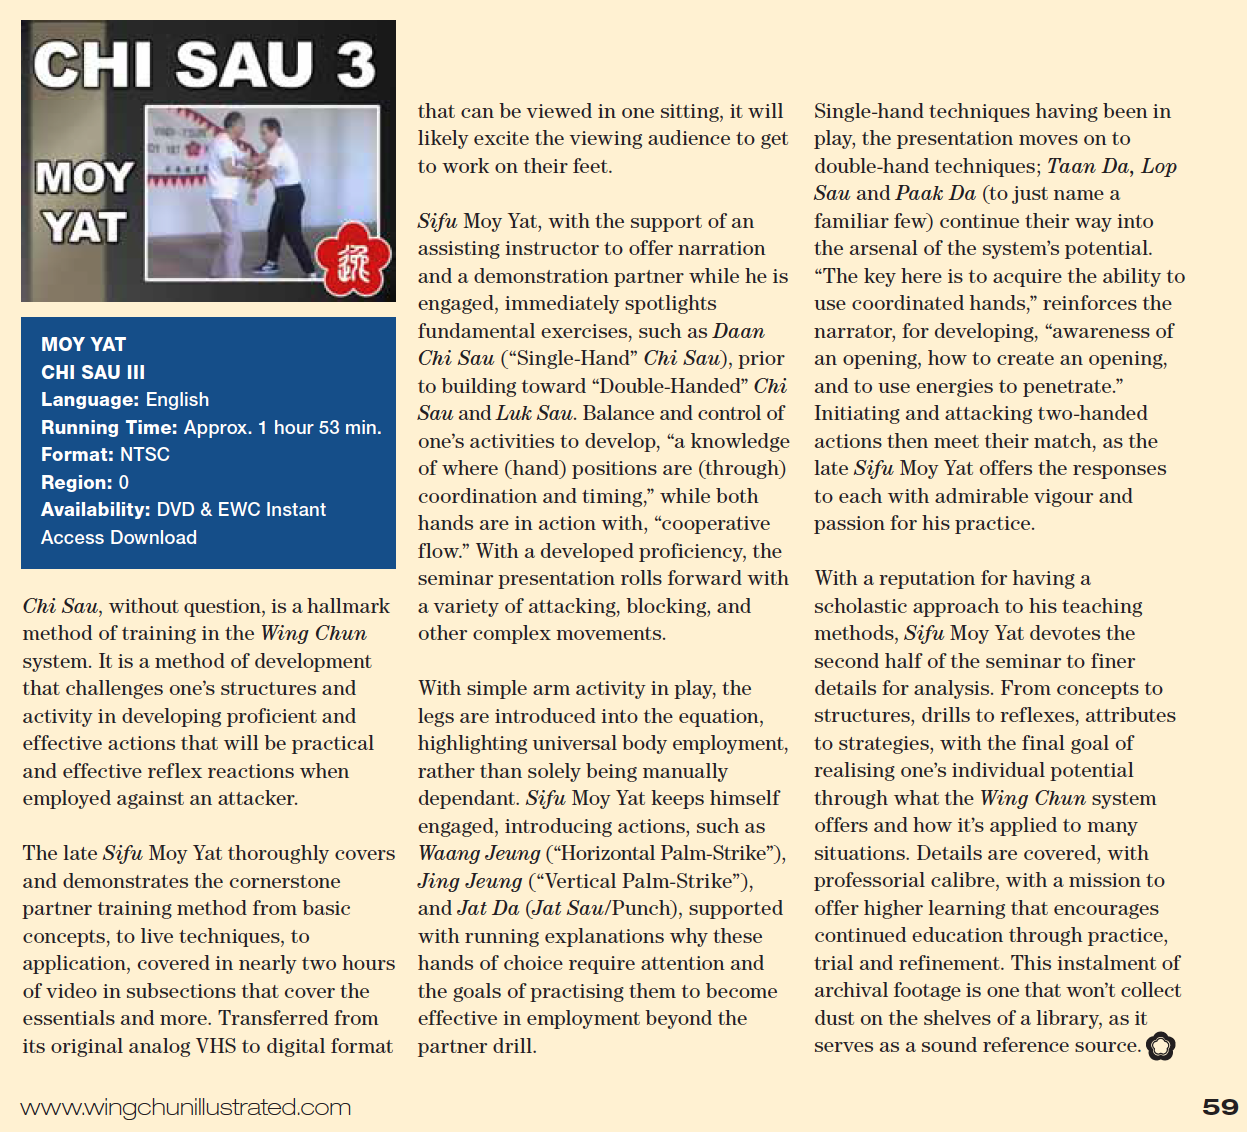 WCI Review - Moy Yat's Chi Sau III DVD